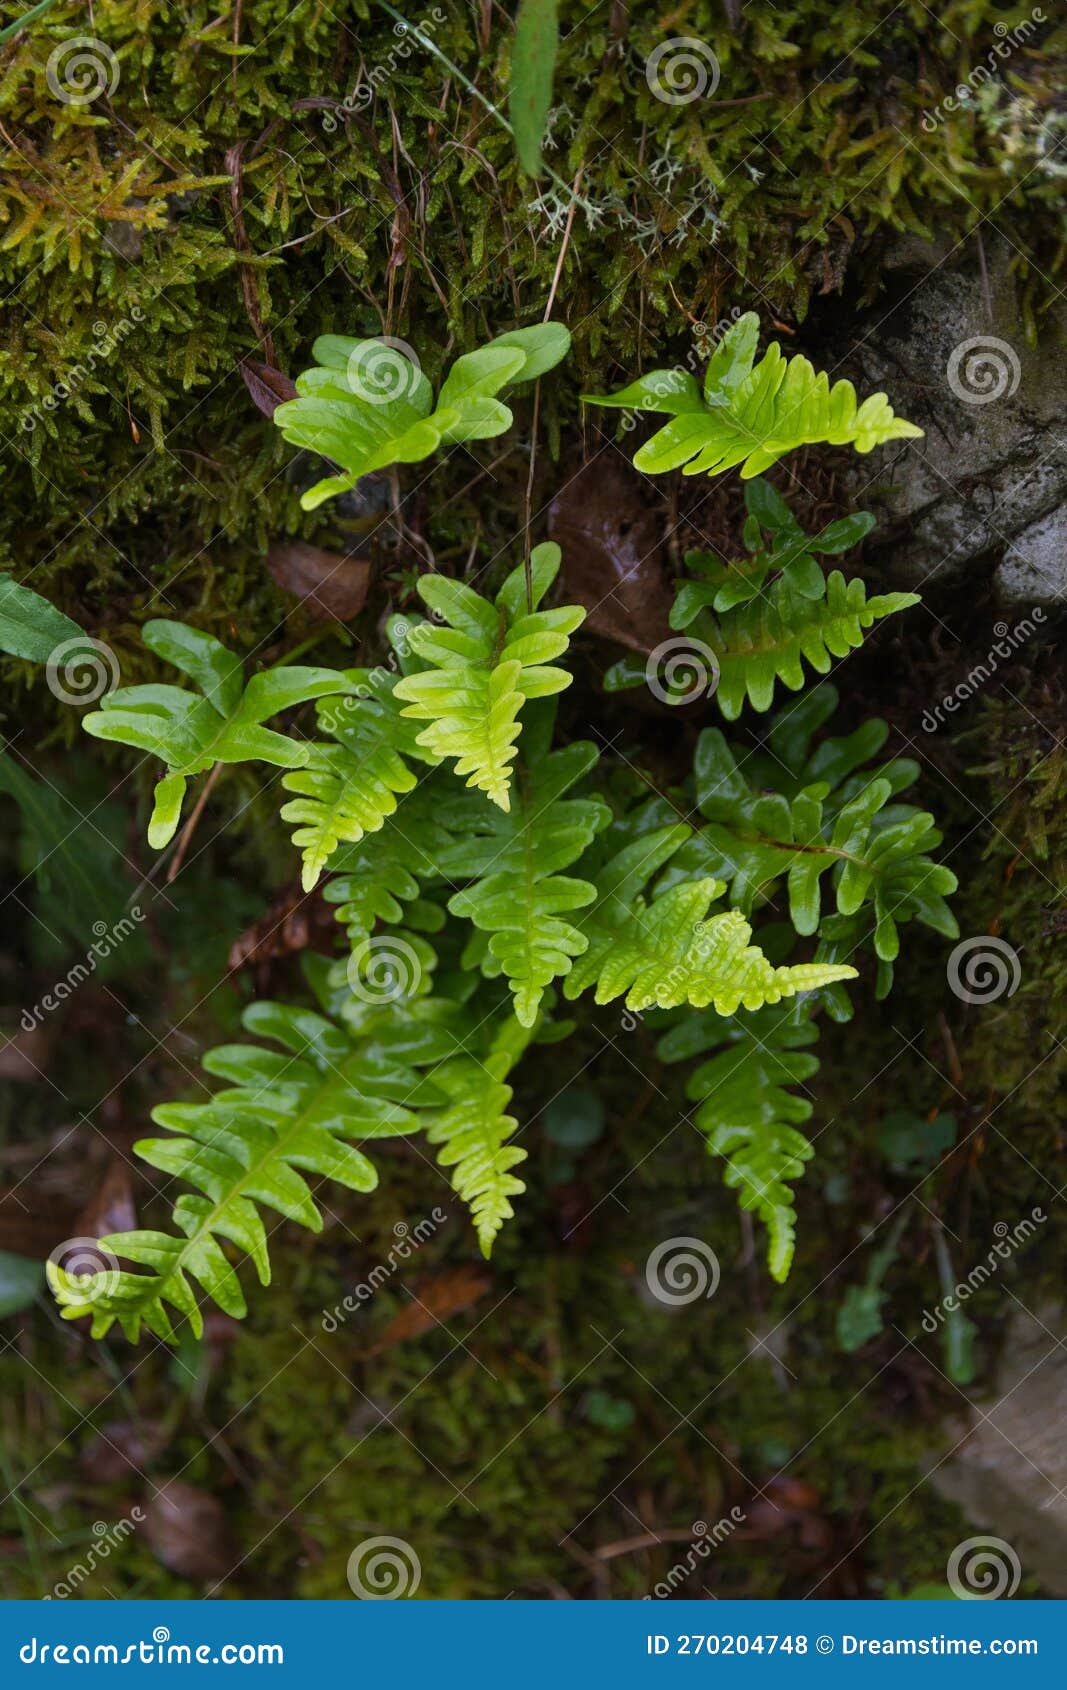 fern polypodium